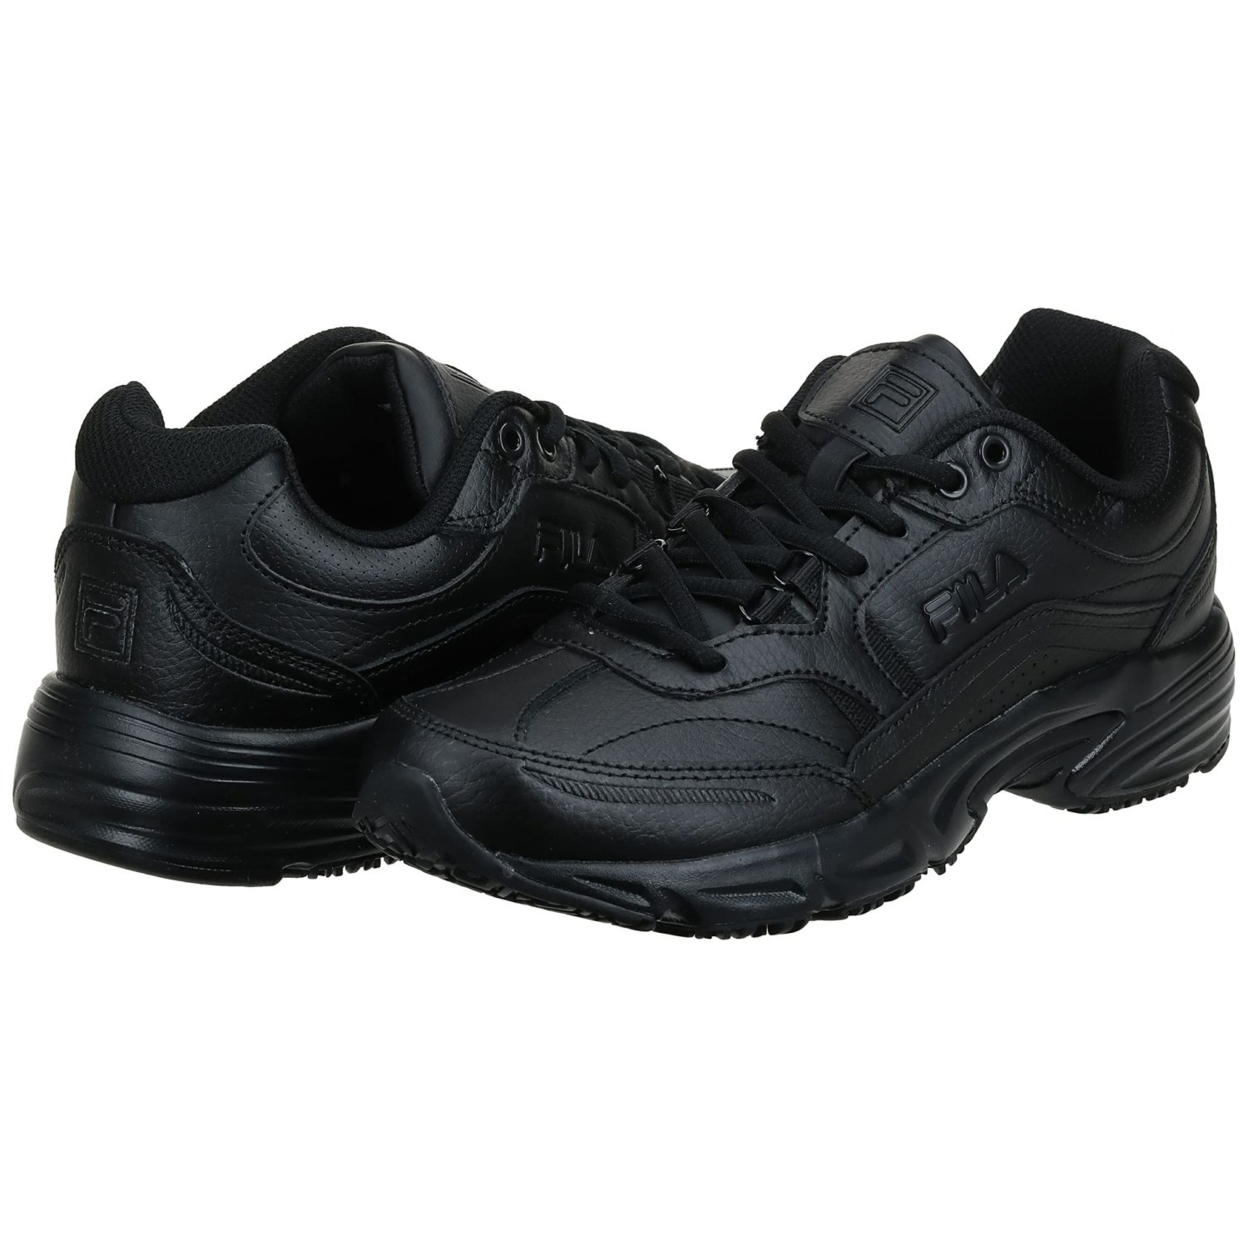 Fila Men's, Memory Workshift Slip Resistant Composite Toe Shoe - Wide Width BLK/BLK/BLK - BLACK/BLACK/BLACK, 10 Wide